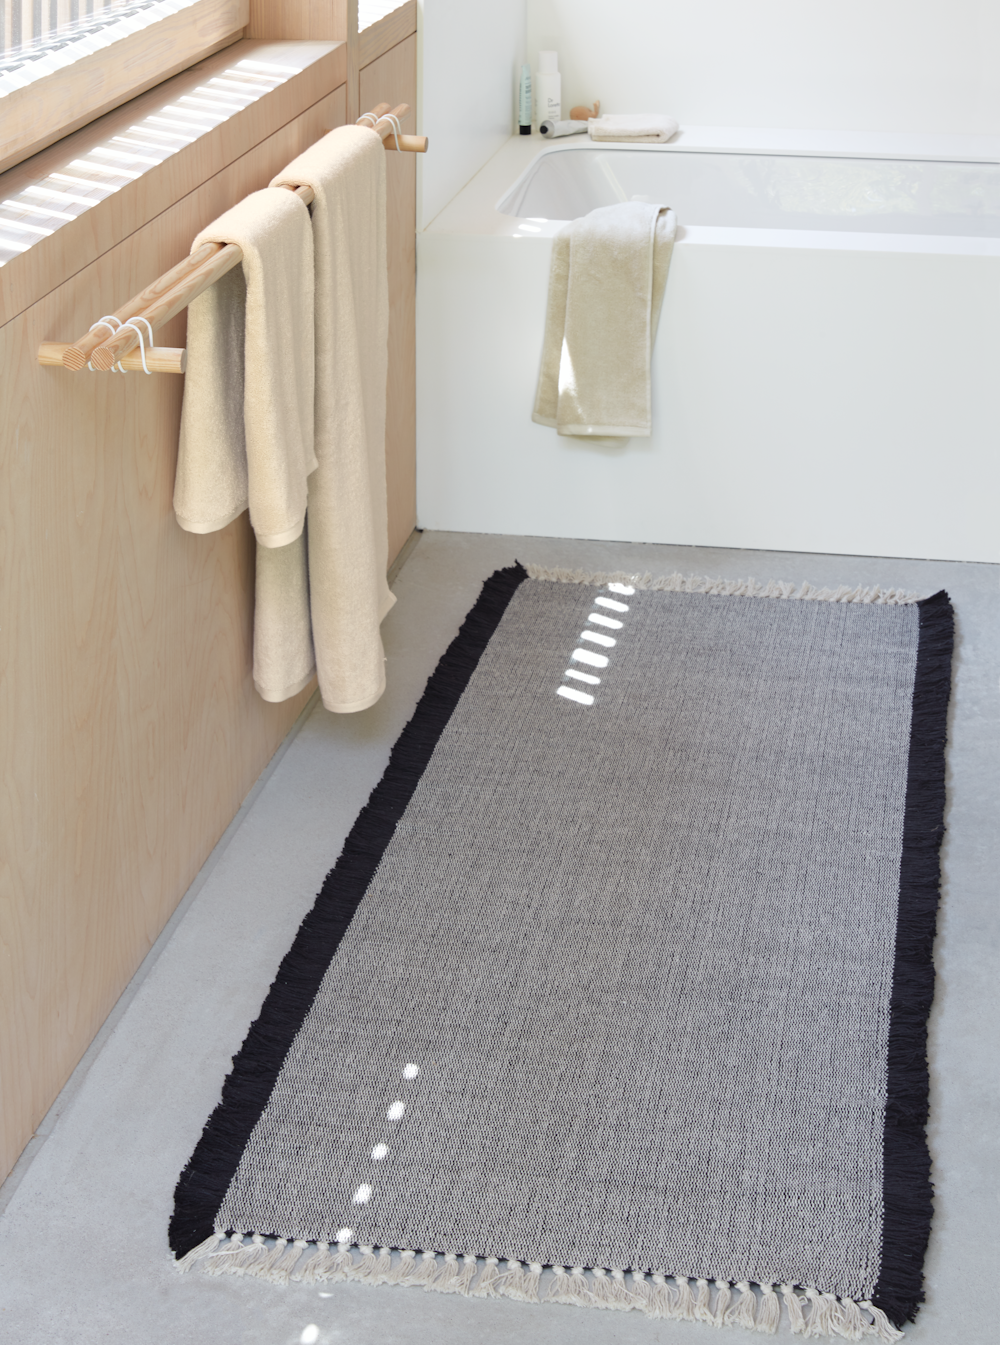 Nodi Cotton Bathmat in a bathroom setting